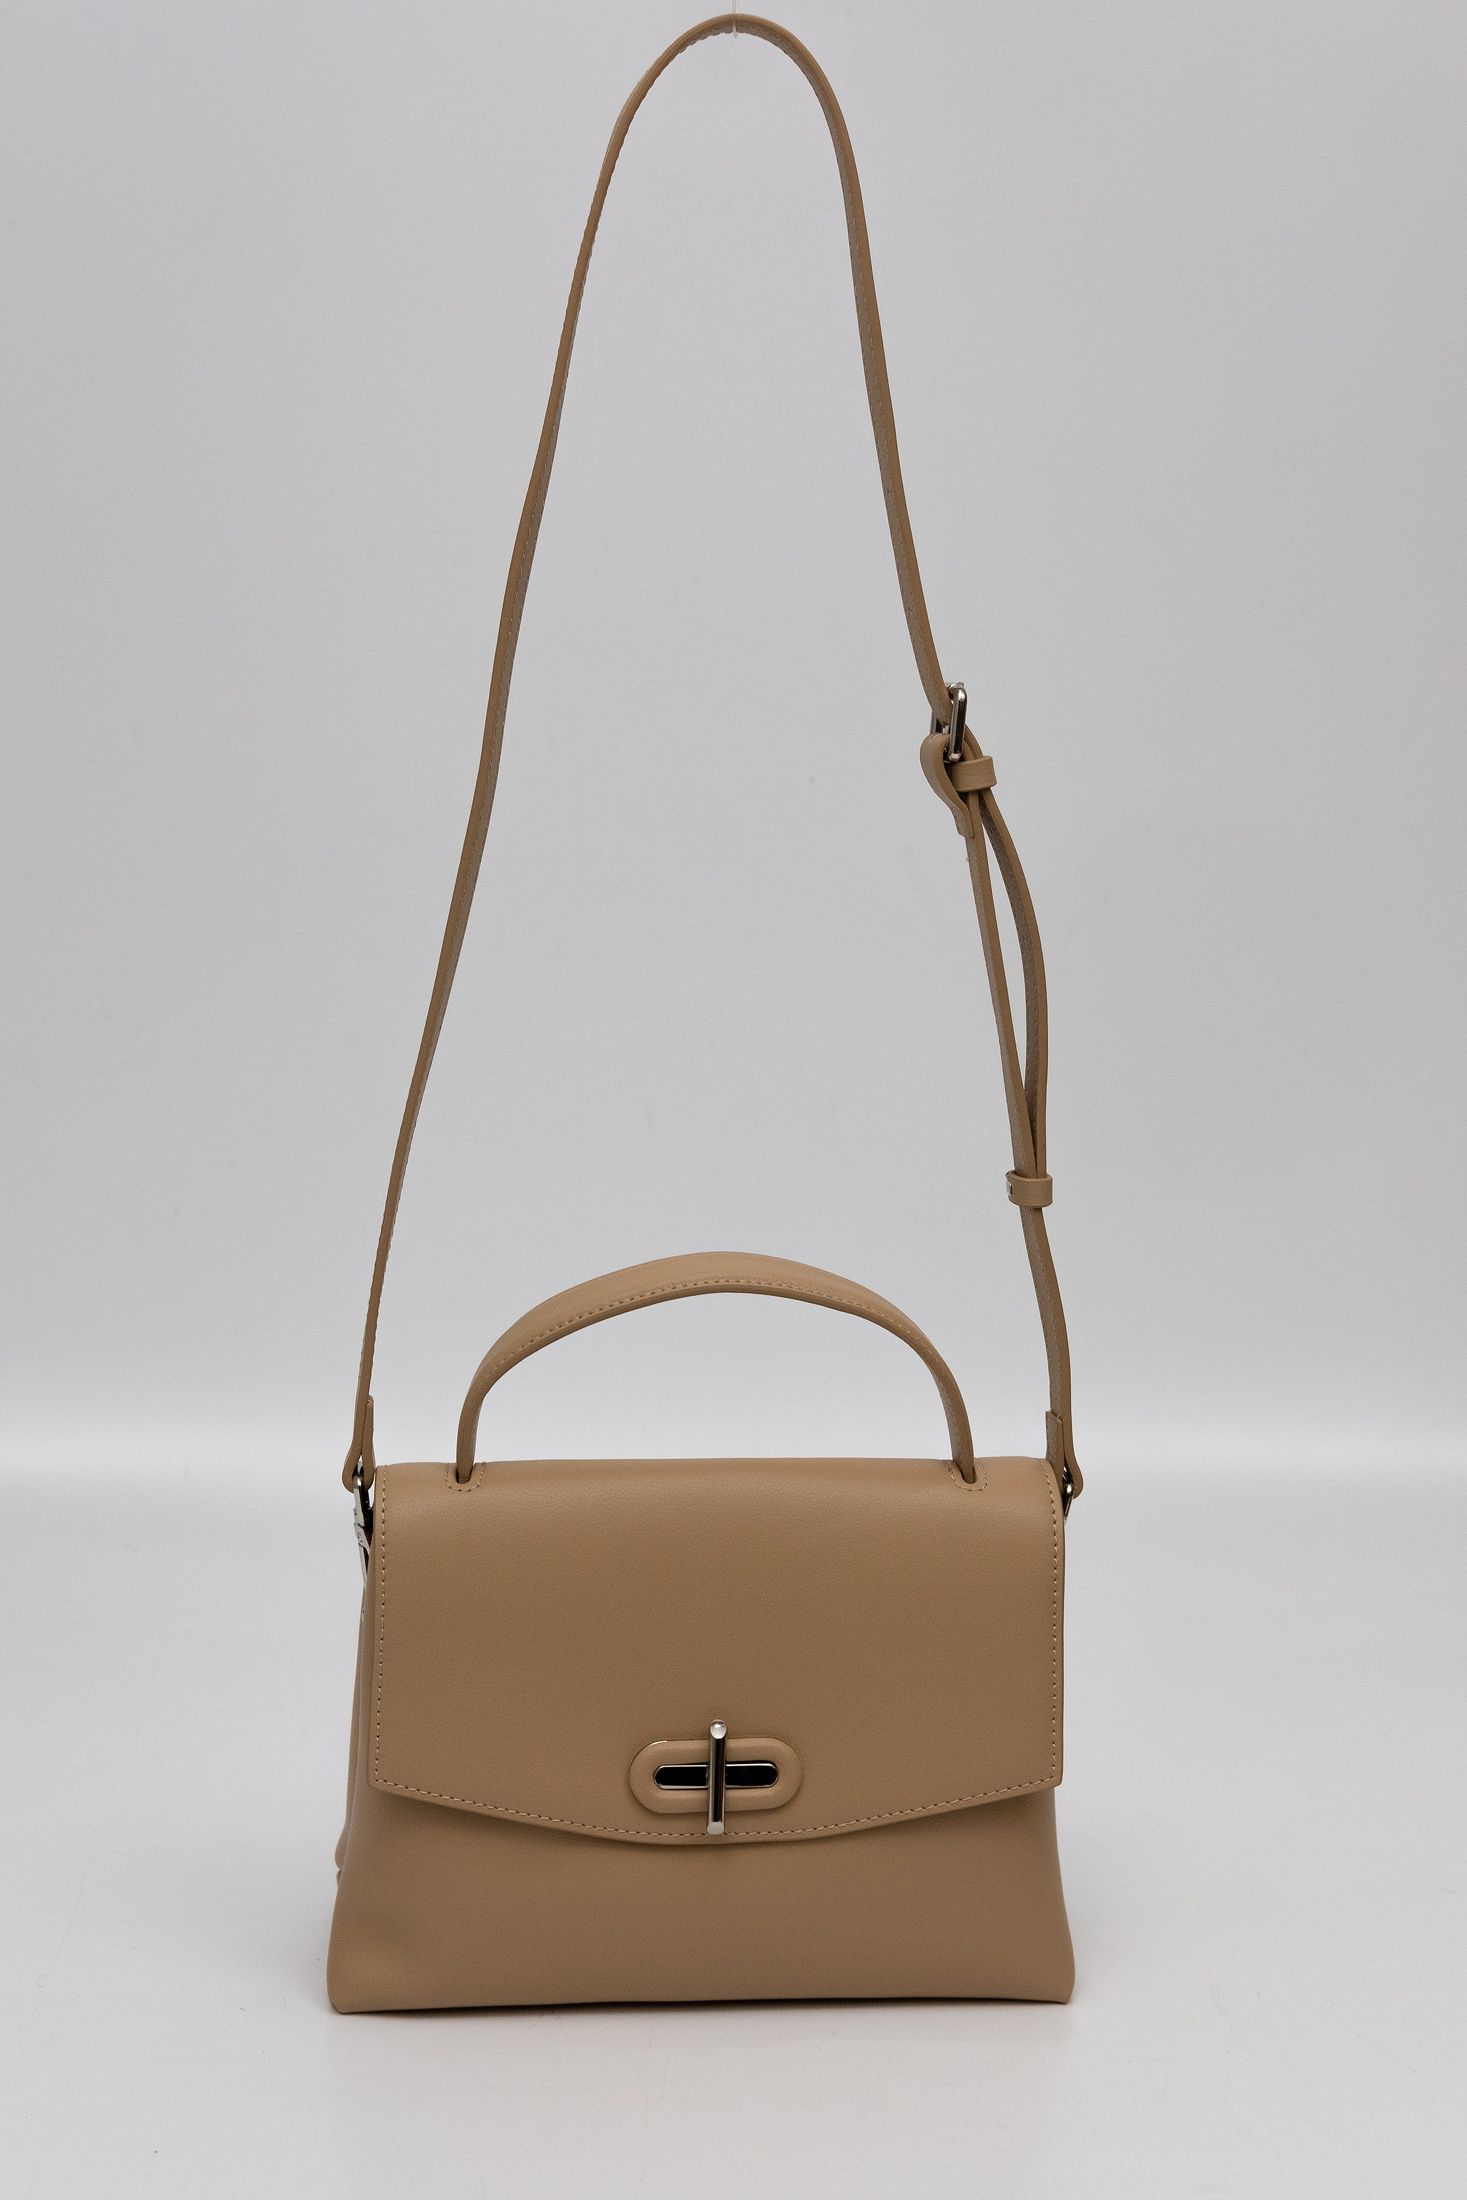 363-73 сумка  жен. дем. натуральная кожа/текстиль коричневый Ludor